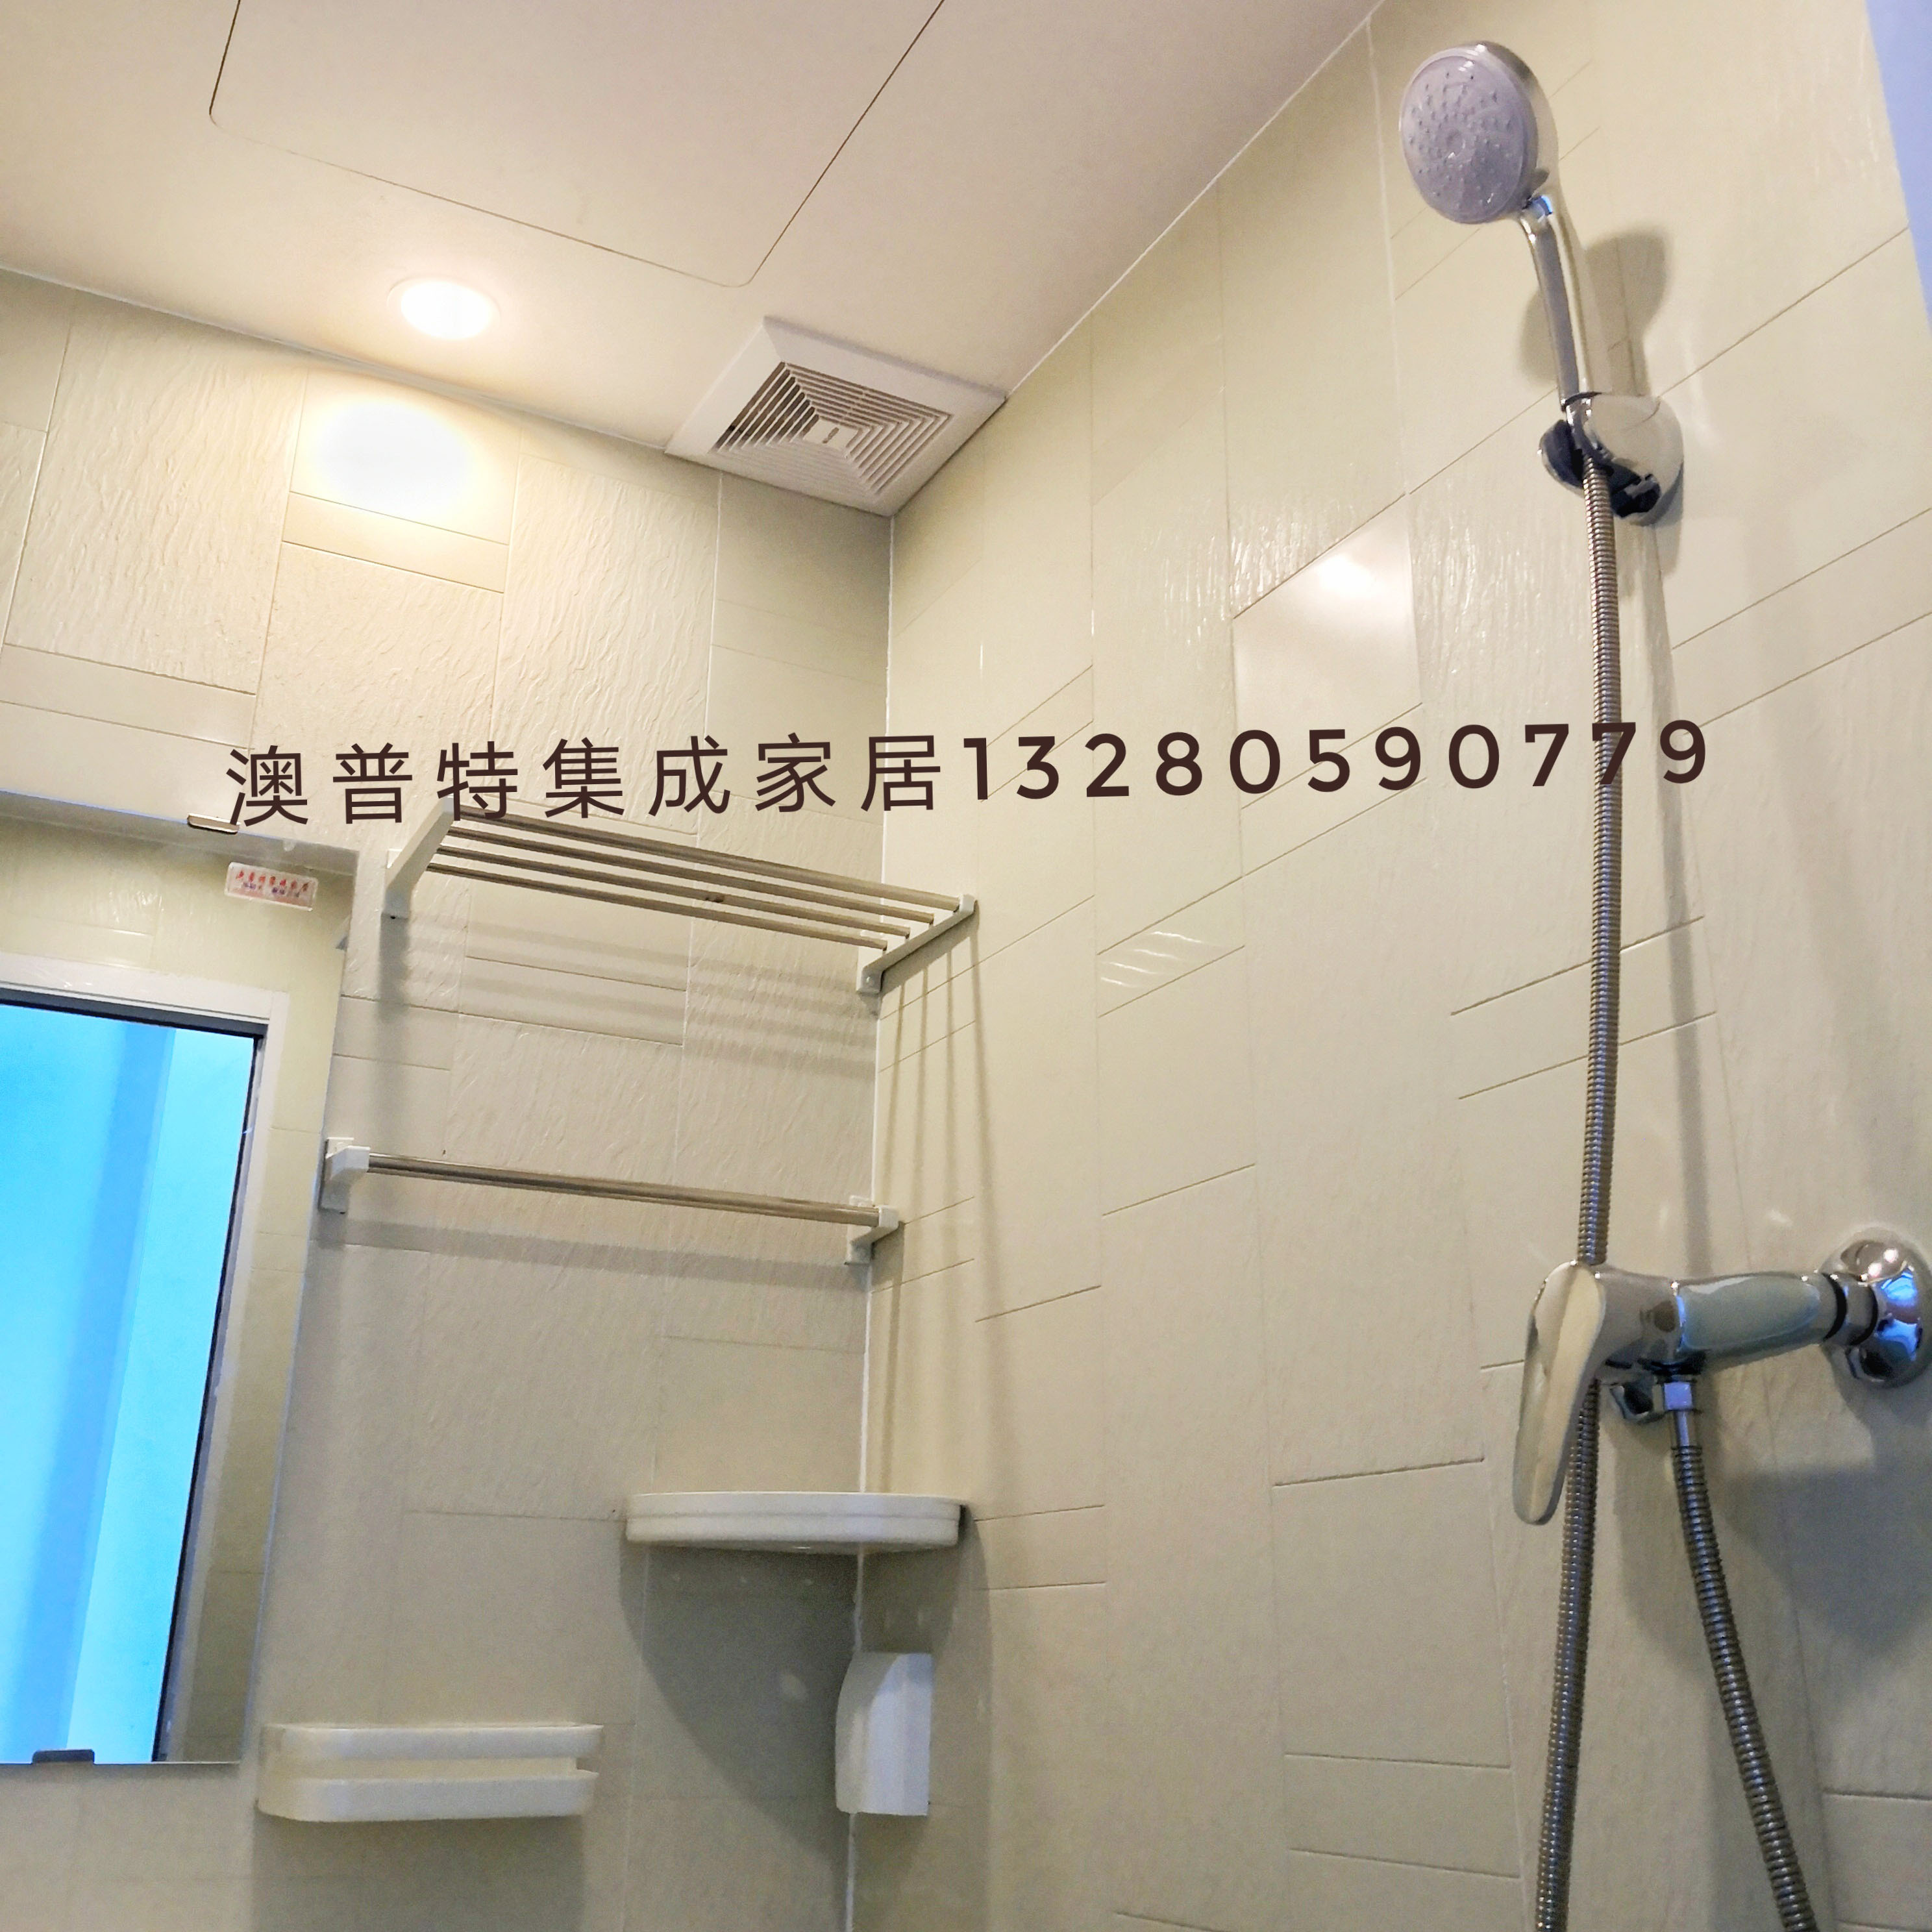 一体式卫生间 预制式卫生间 临沂澳普特集成家居 日式浴室 厂家价格图片